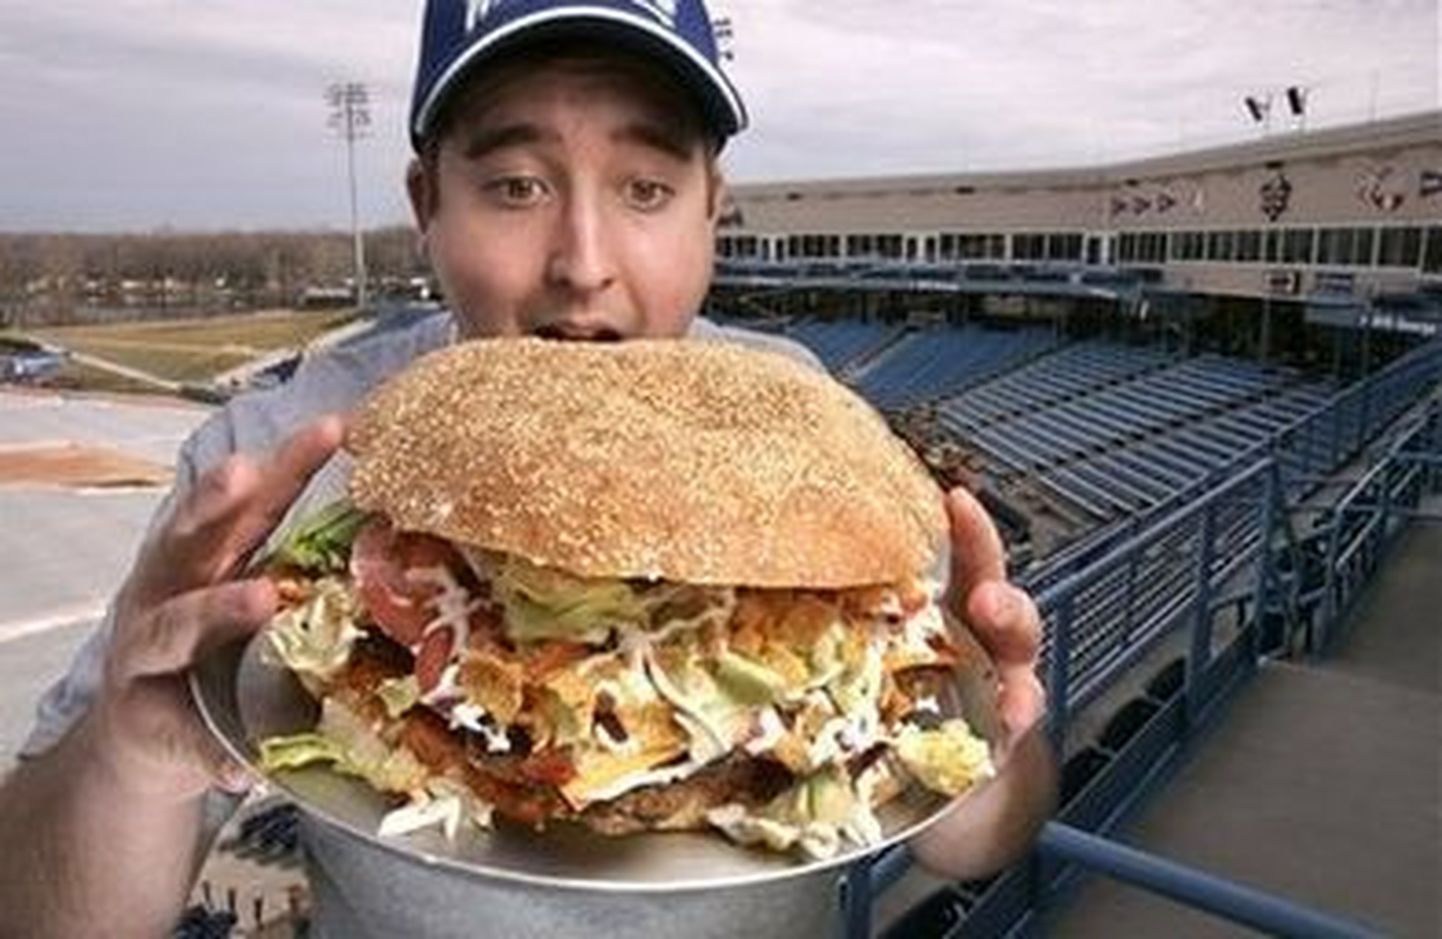 Ülisuur hamburger sisaldab 4800 kilokalorit